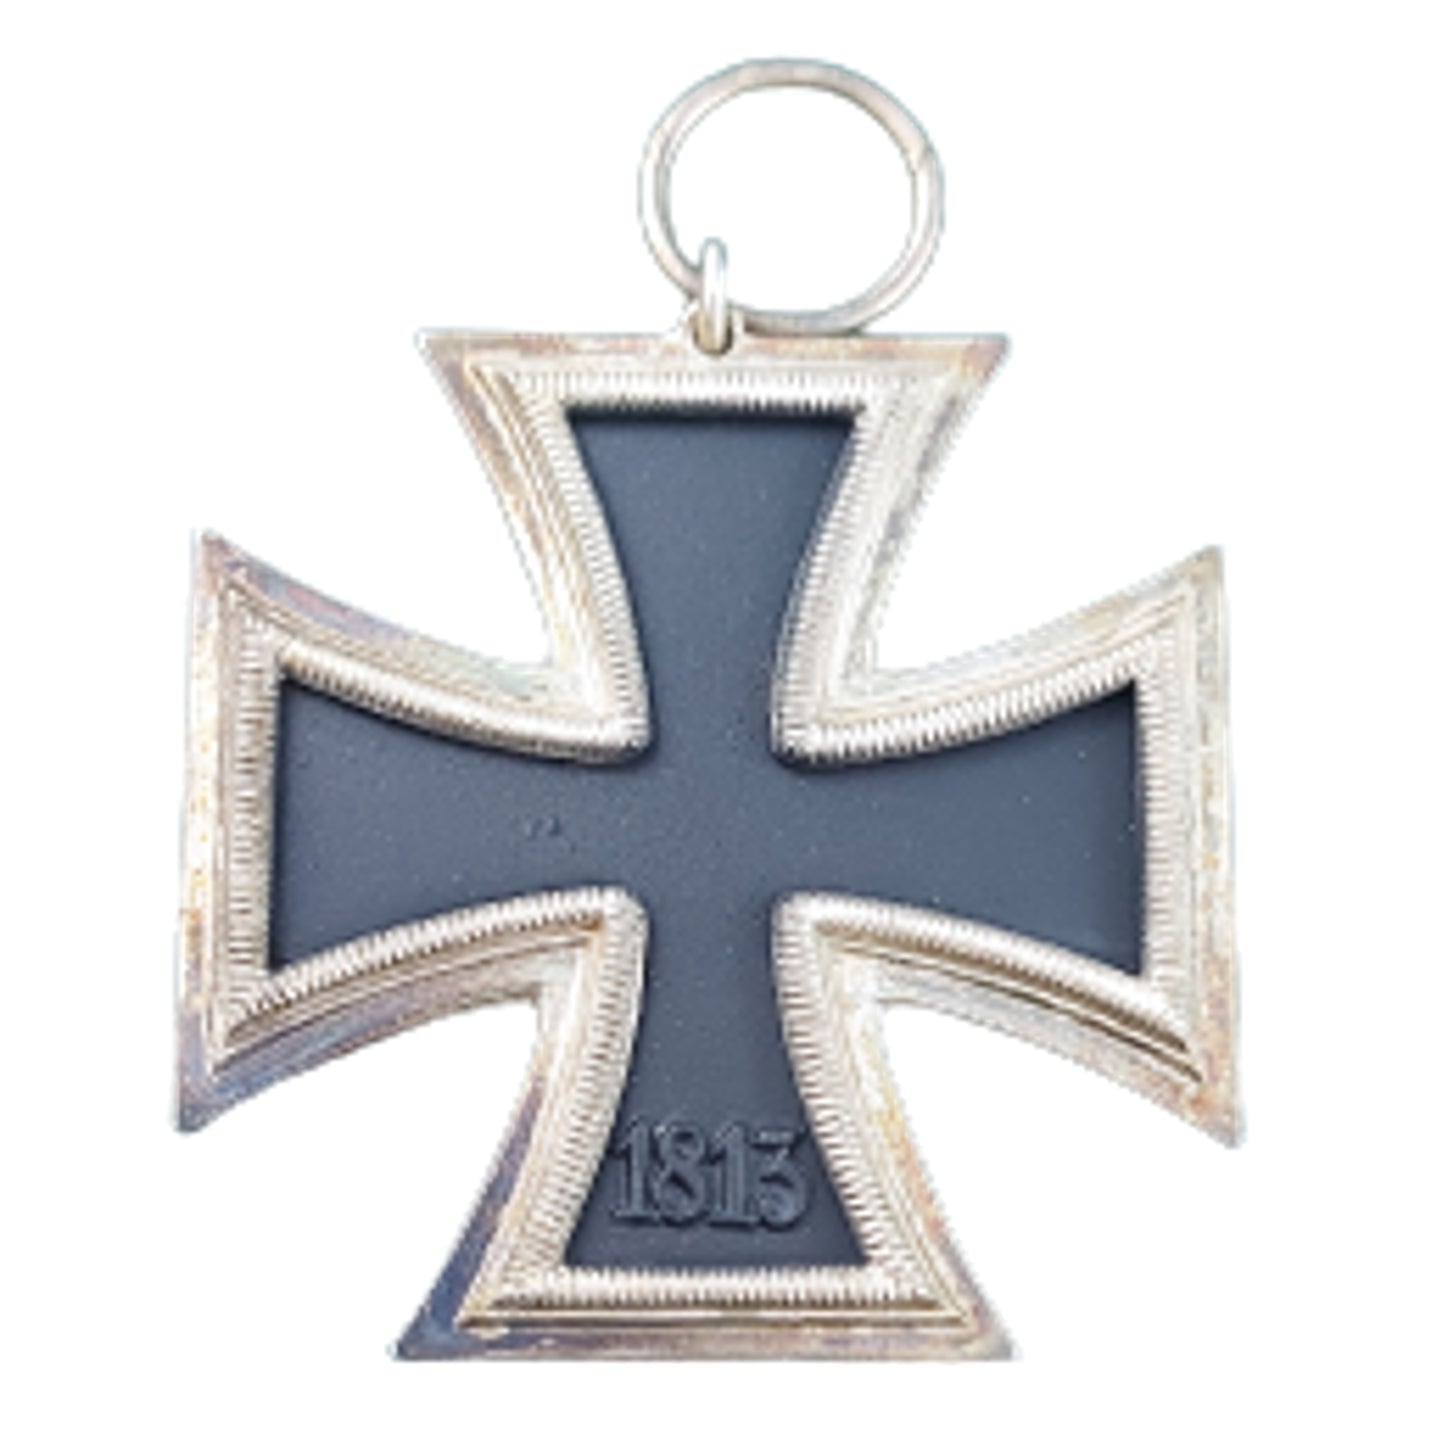 WW2 German Iron Cross 2nd Class - Maker Number 1 - Deschler & Sohn